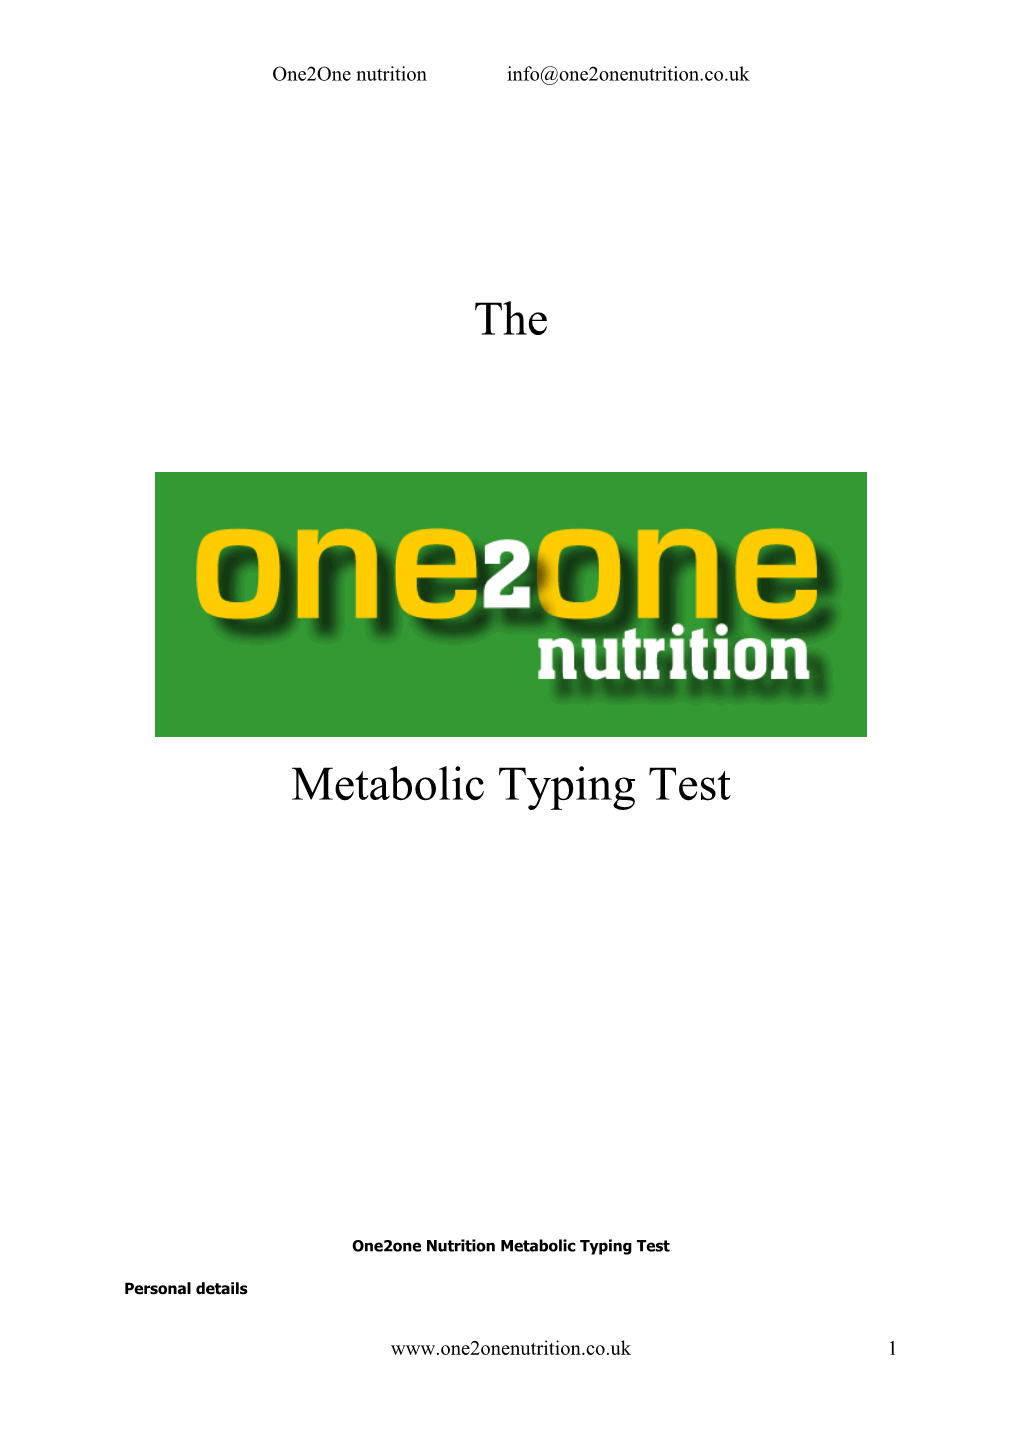 Metabolic Typing Test